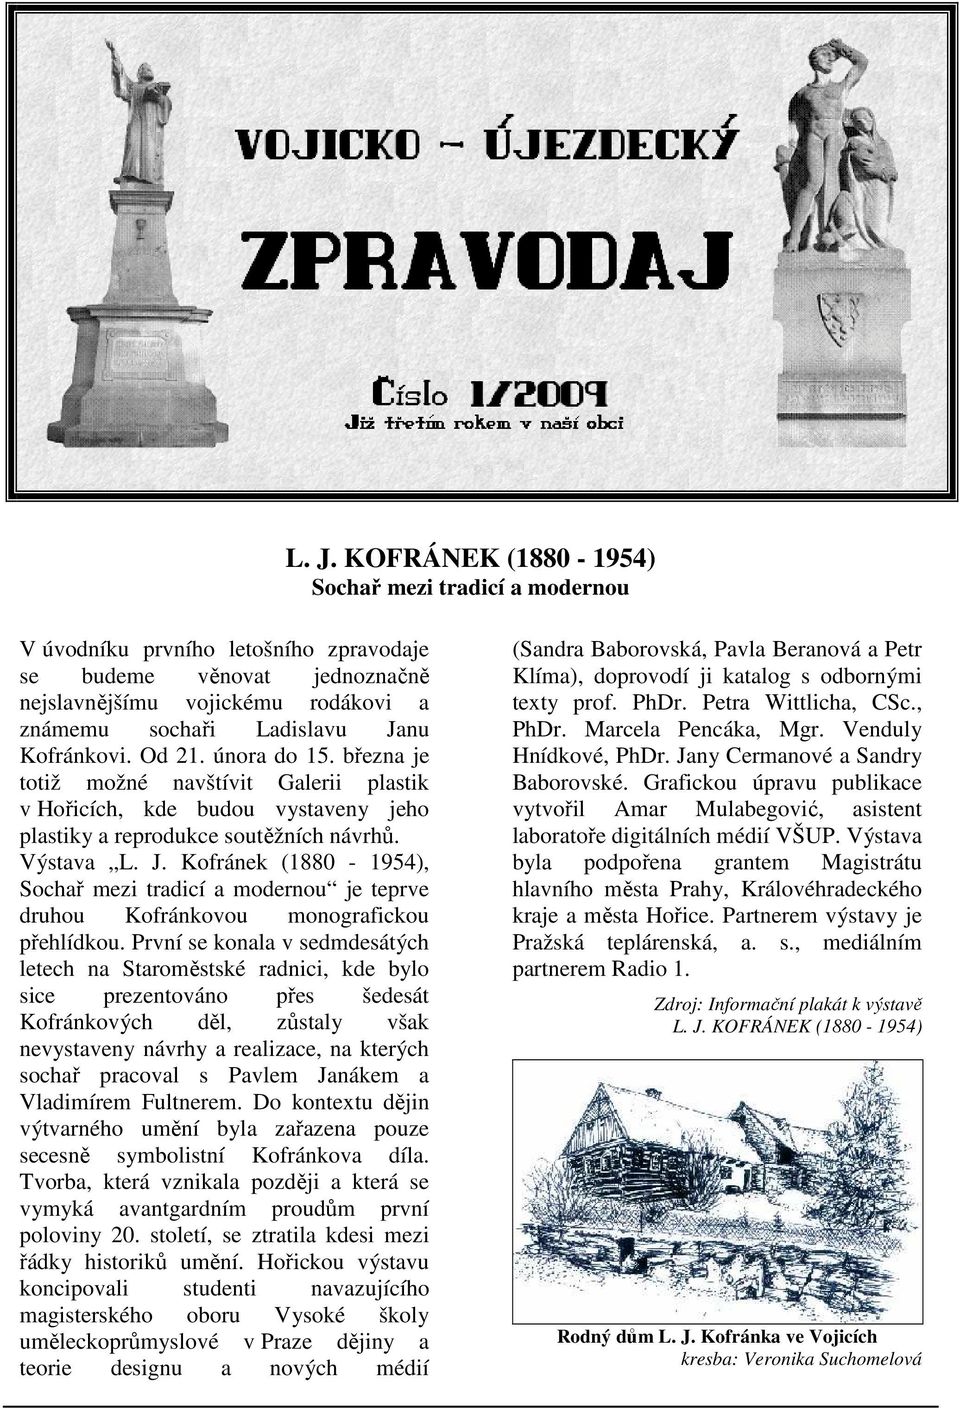 Kofránek (1880-1954), Sochař mezi tradicí a modernou je teprve druhou Kofránkovou monografickou přehlídkou.